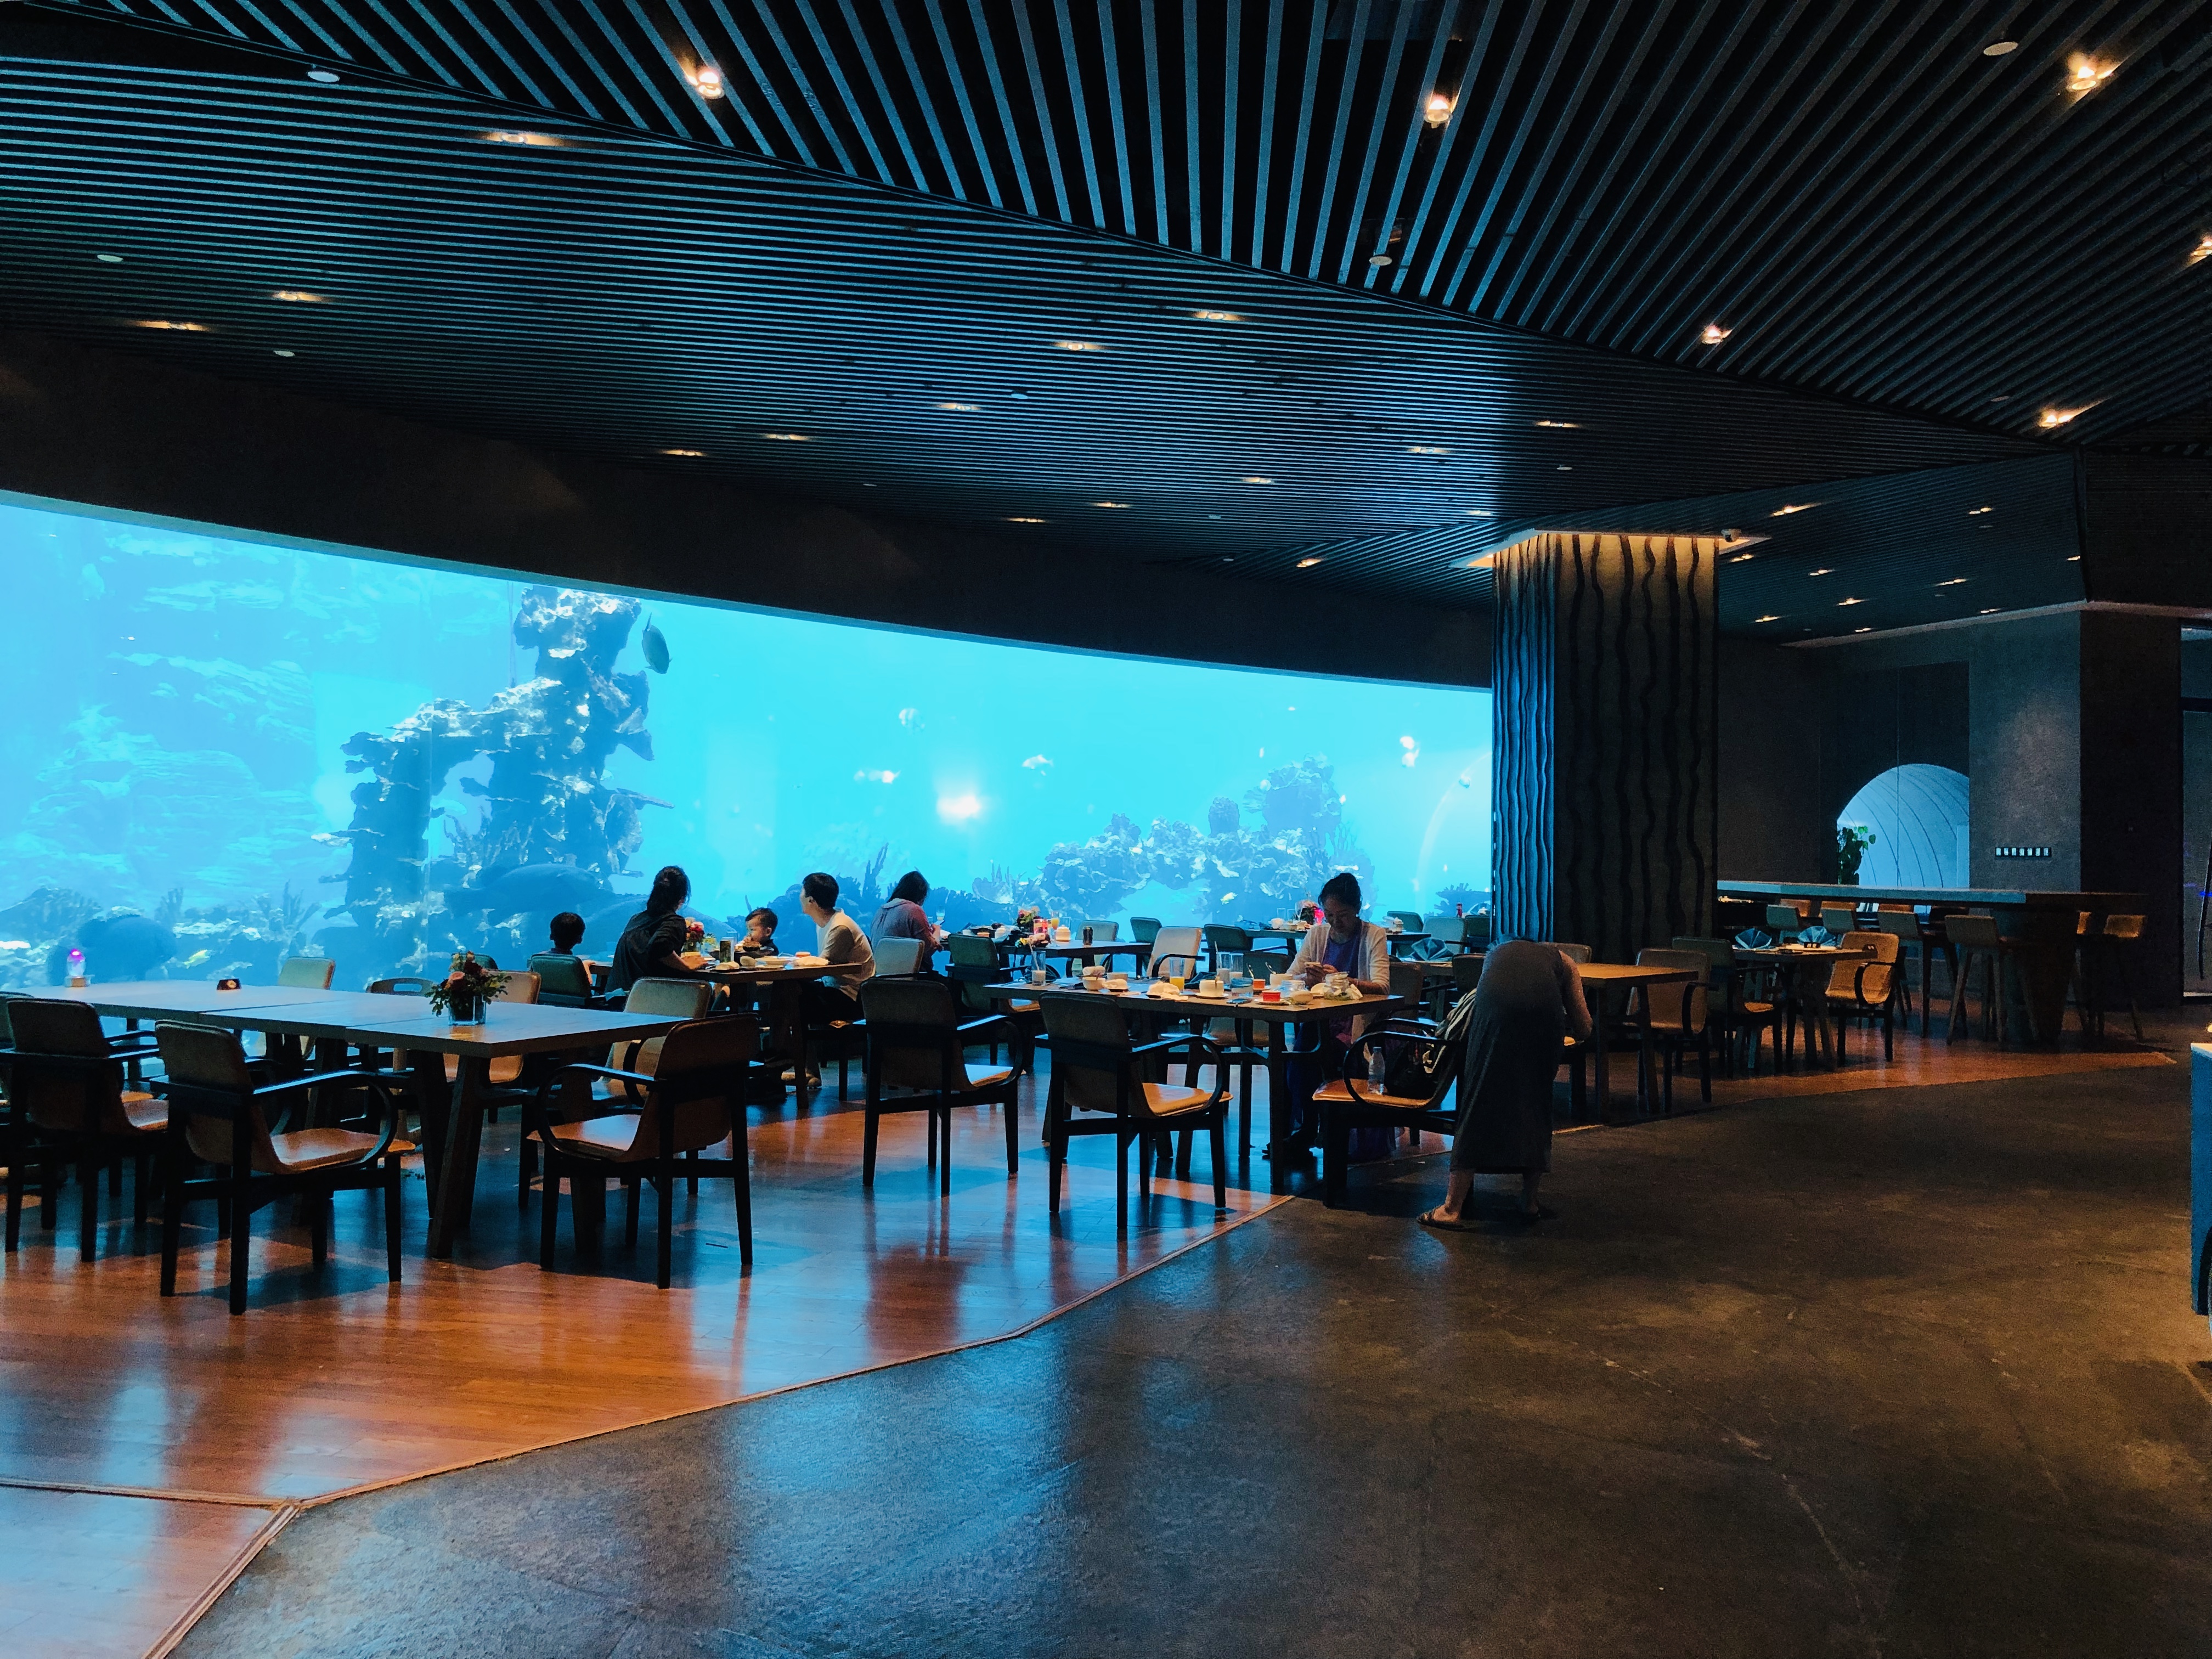 海底餐厅是如何设计建造 - 哔哩哔哩